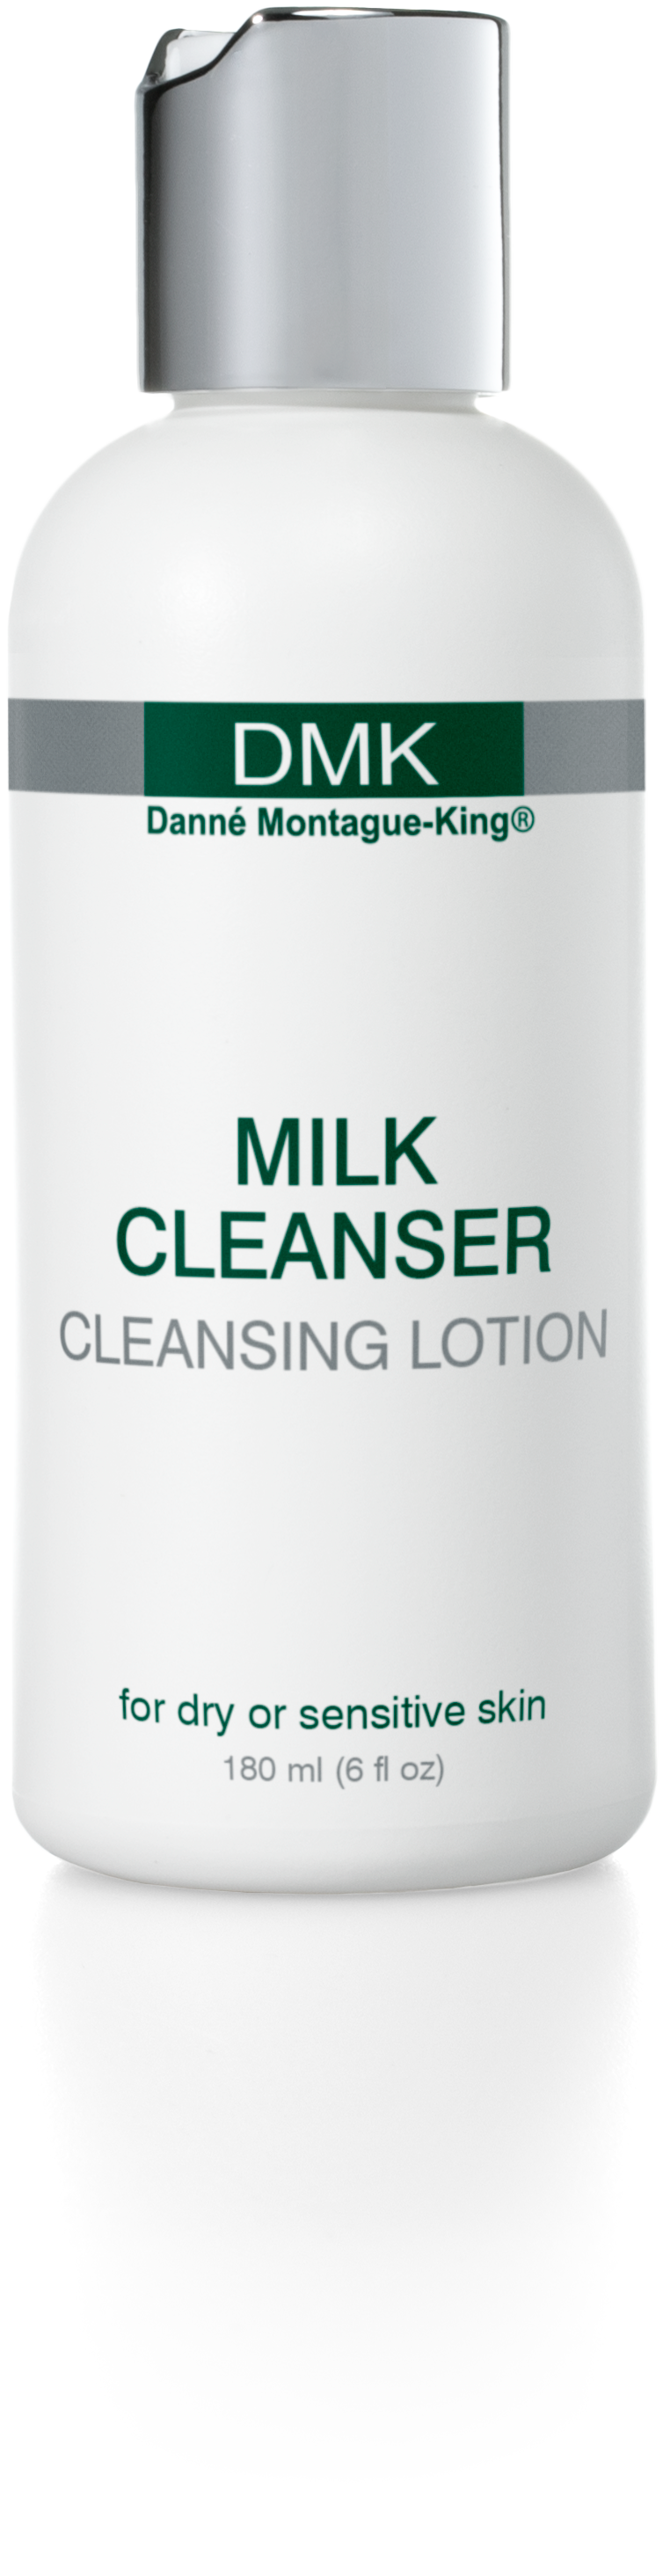 DMK Milk Cleanser 180ml